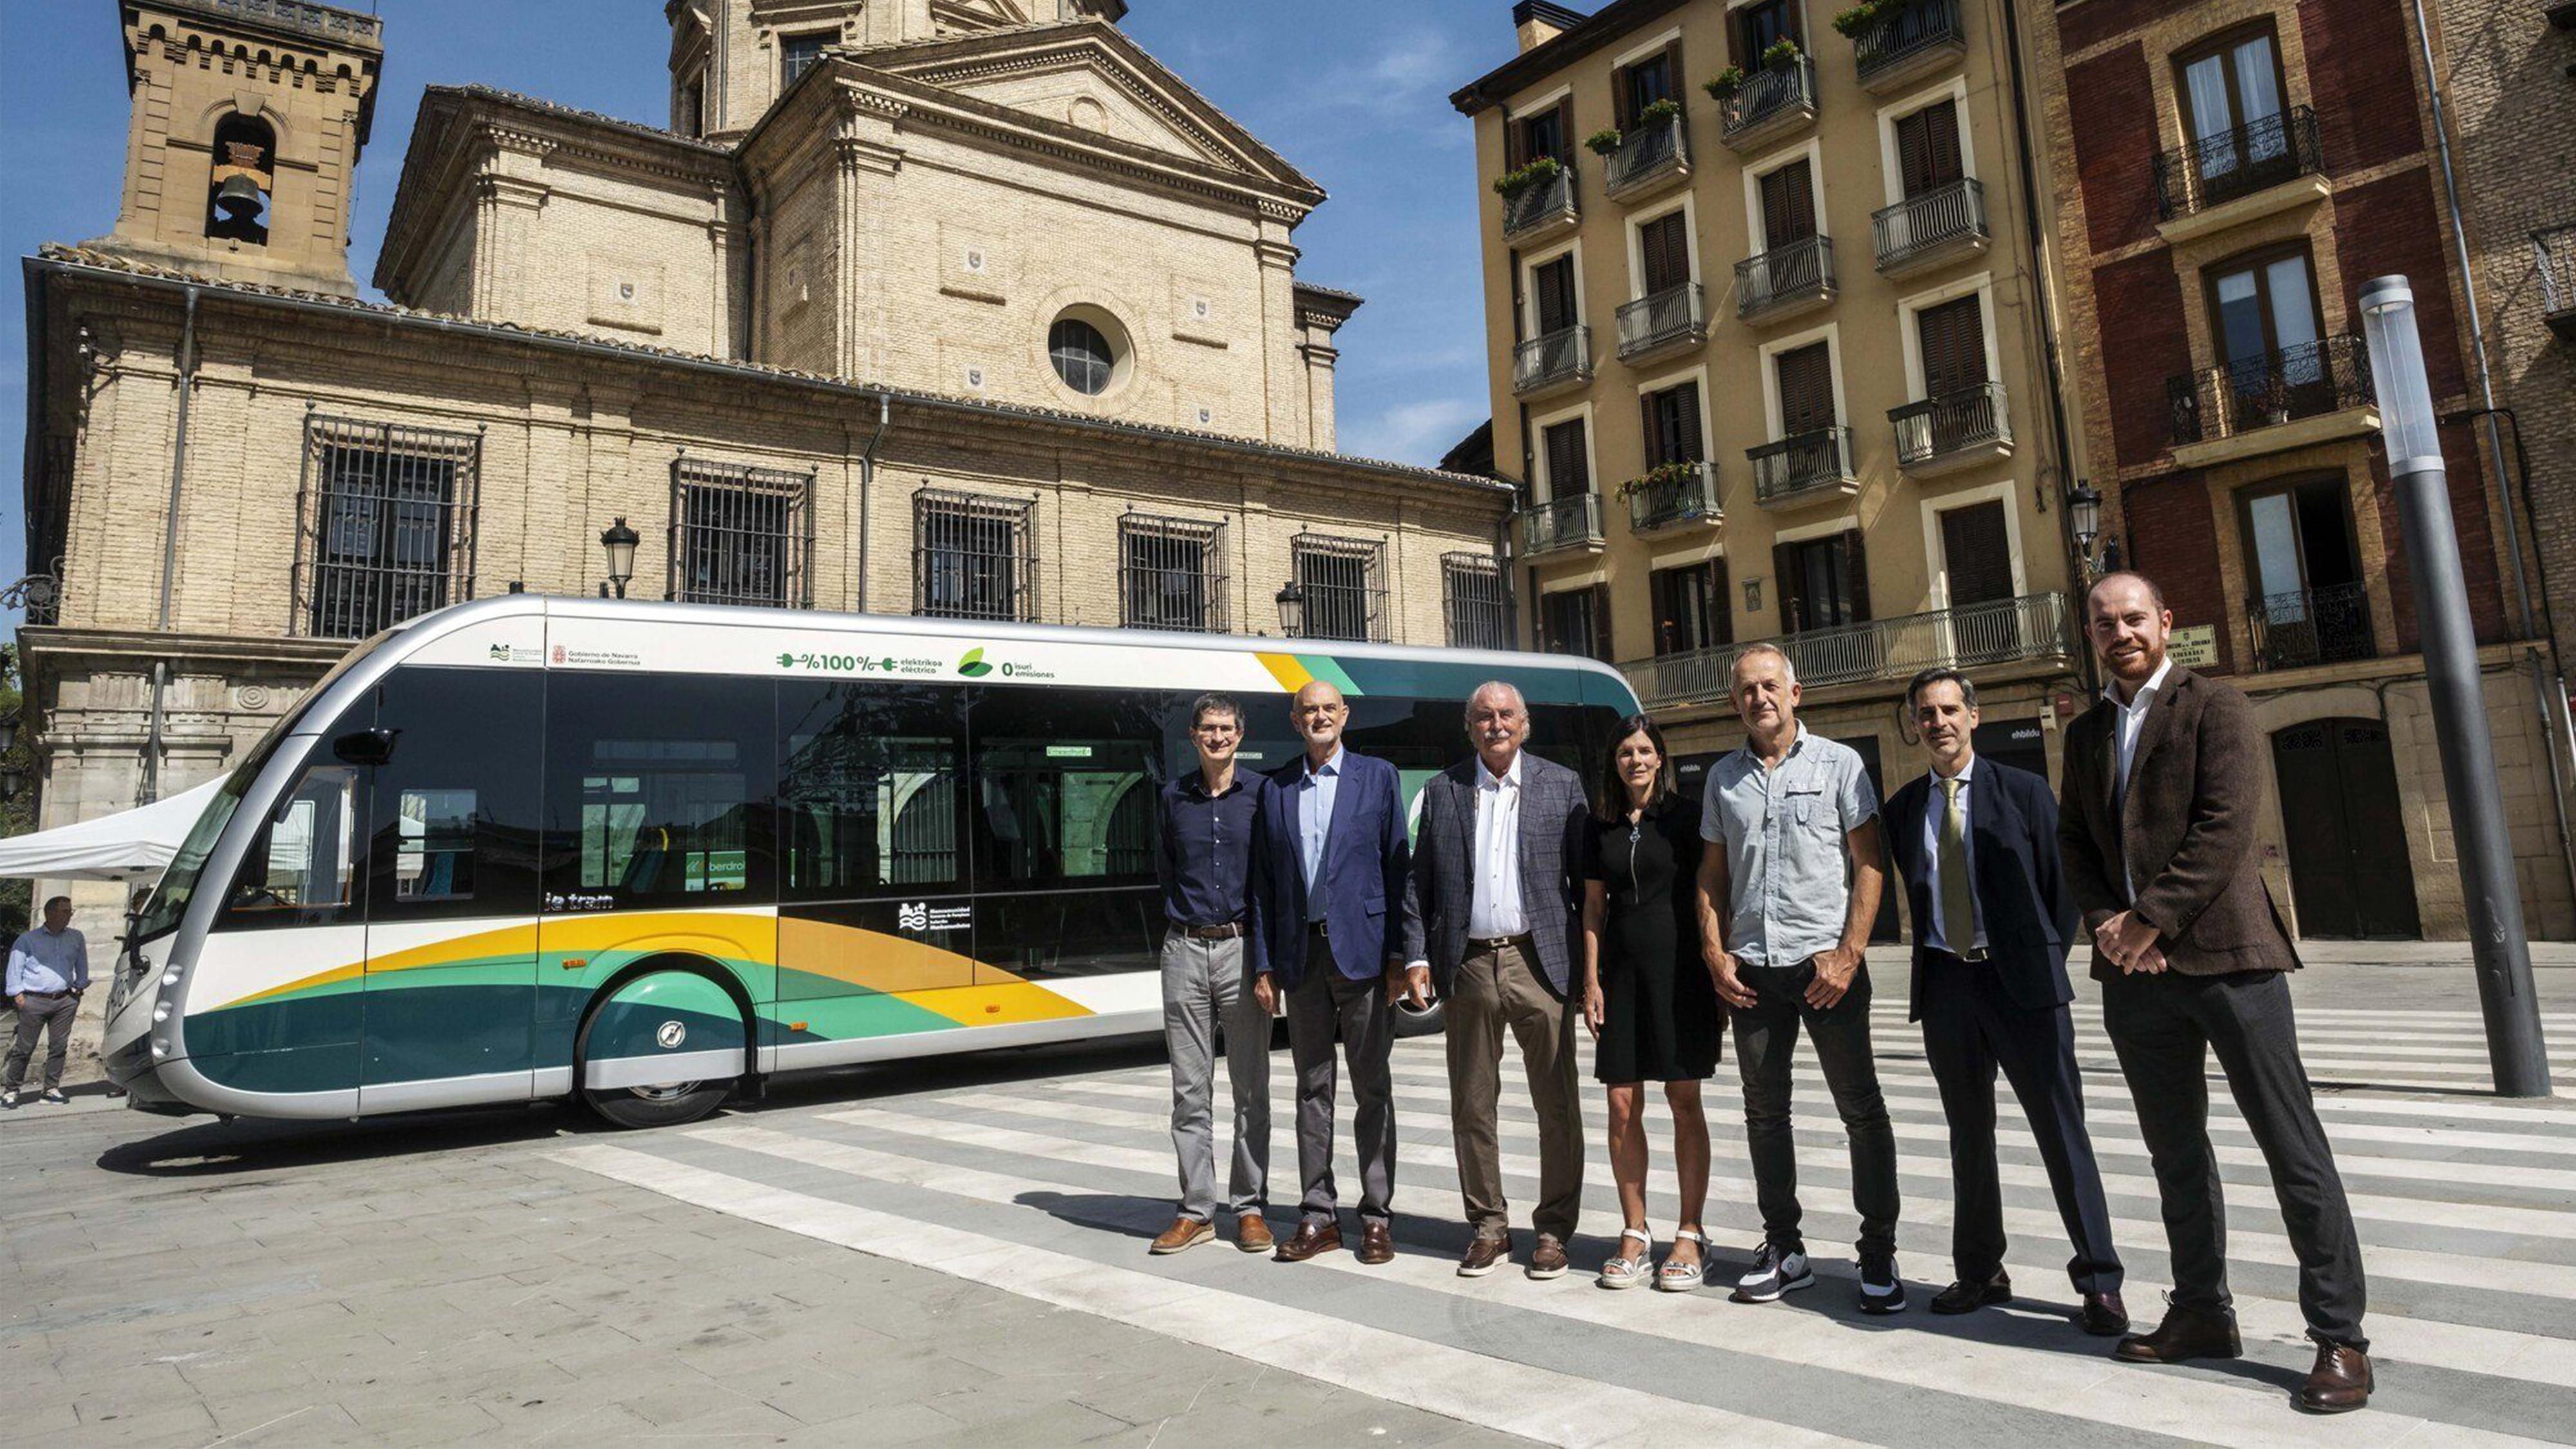 Hemos tenido el placer de asistir a la presentación de los nuevos autobuses operados por Transports Ciutat Comtal (TCC) del grupo Moventis en Pamplona